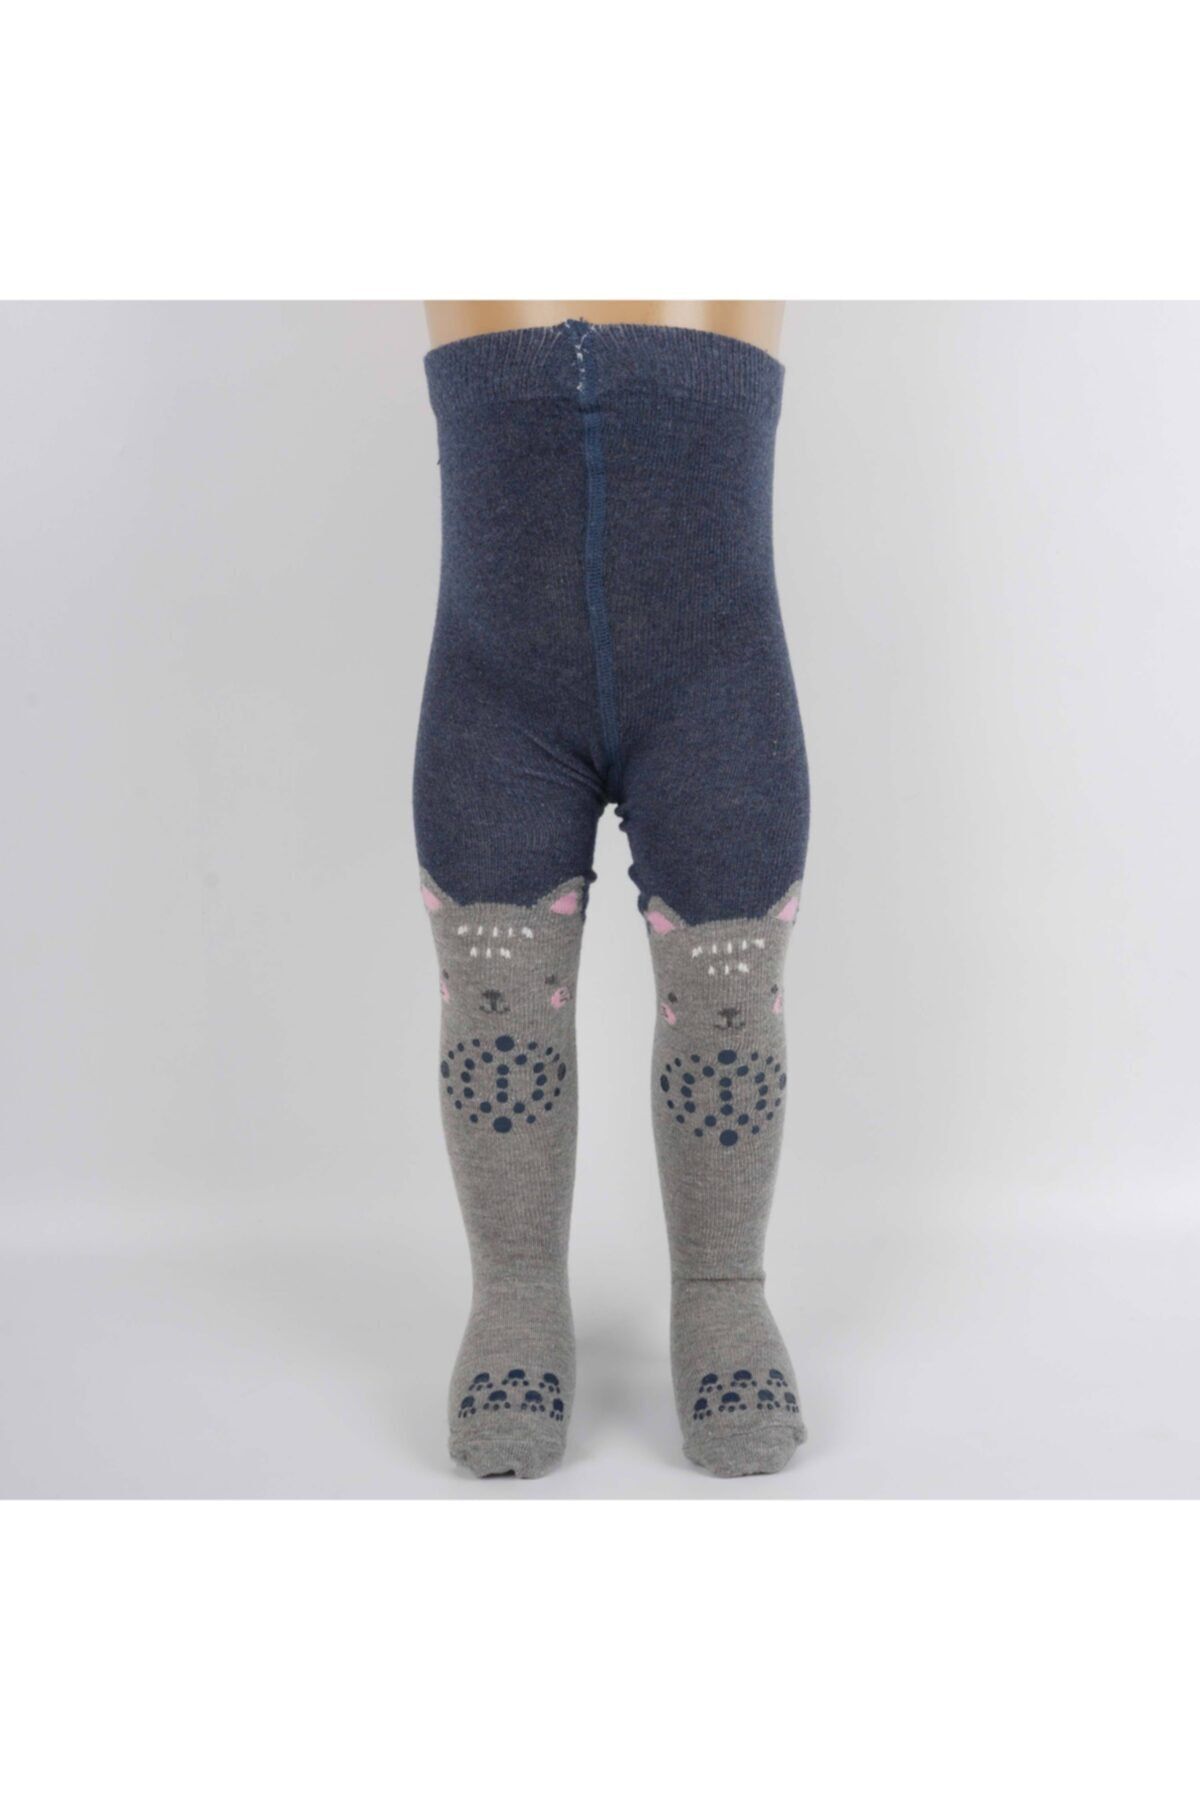 Artı Yaren Kız Emekleme Bebek Külotlu Çorap